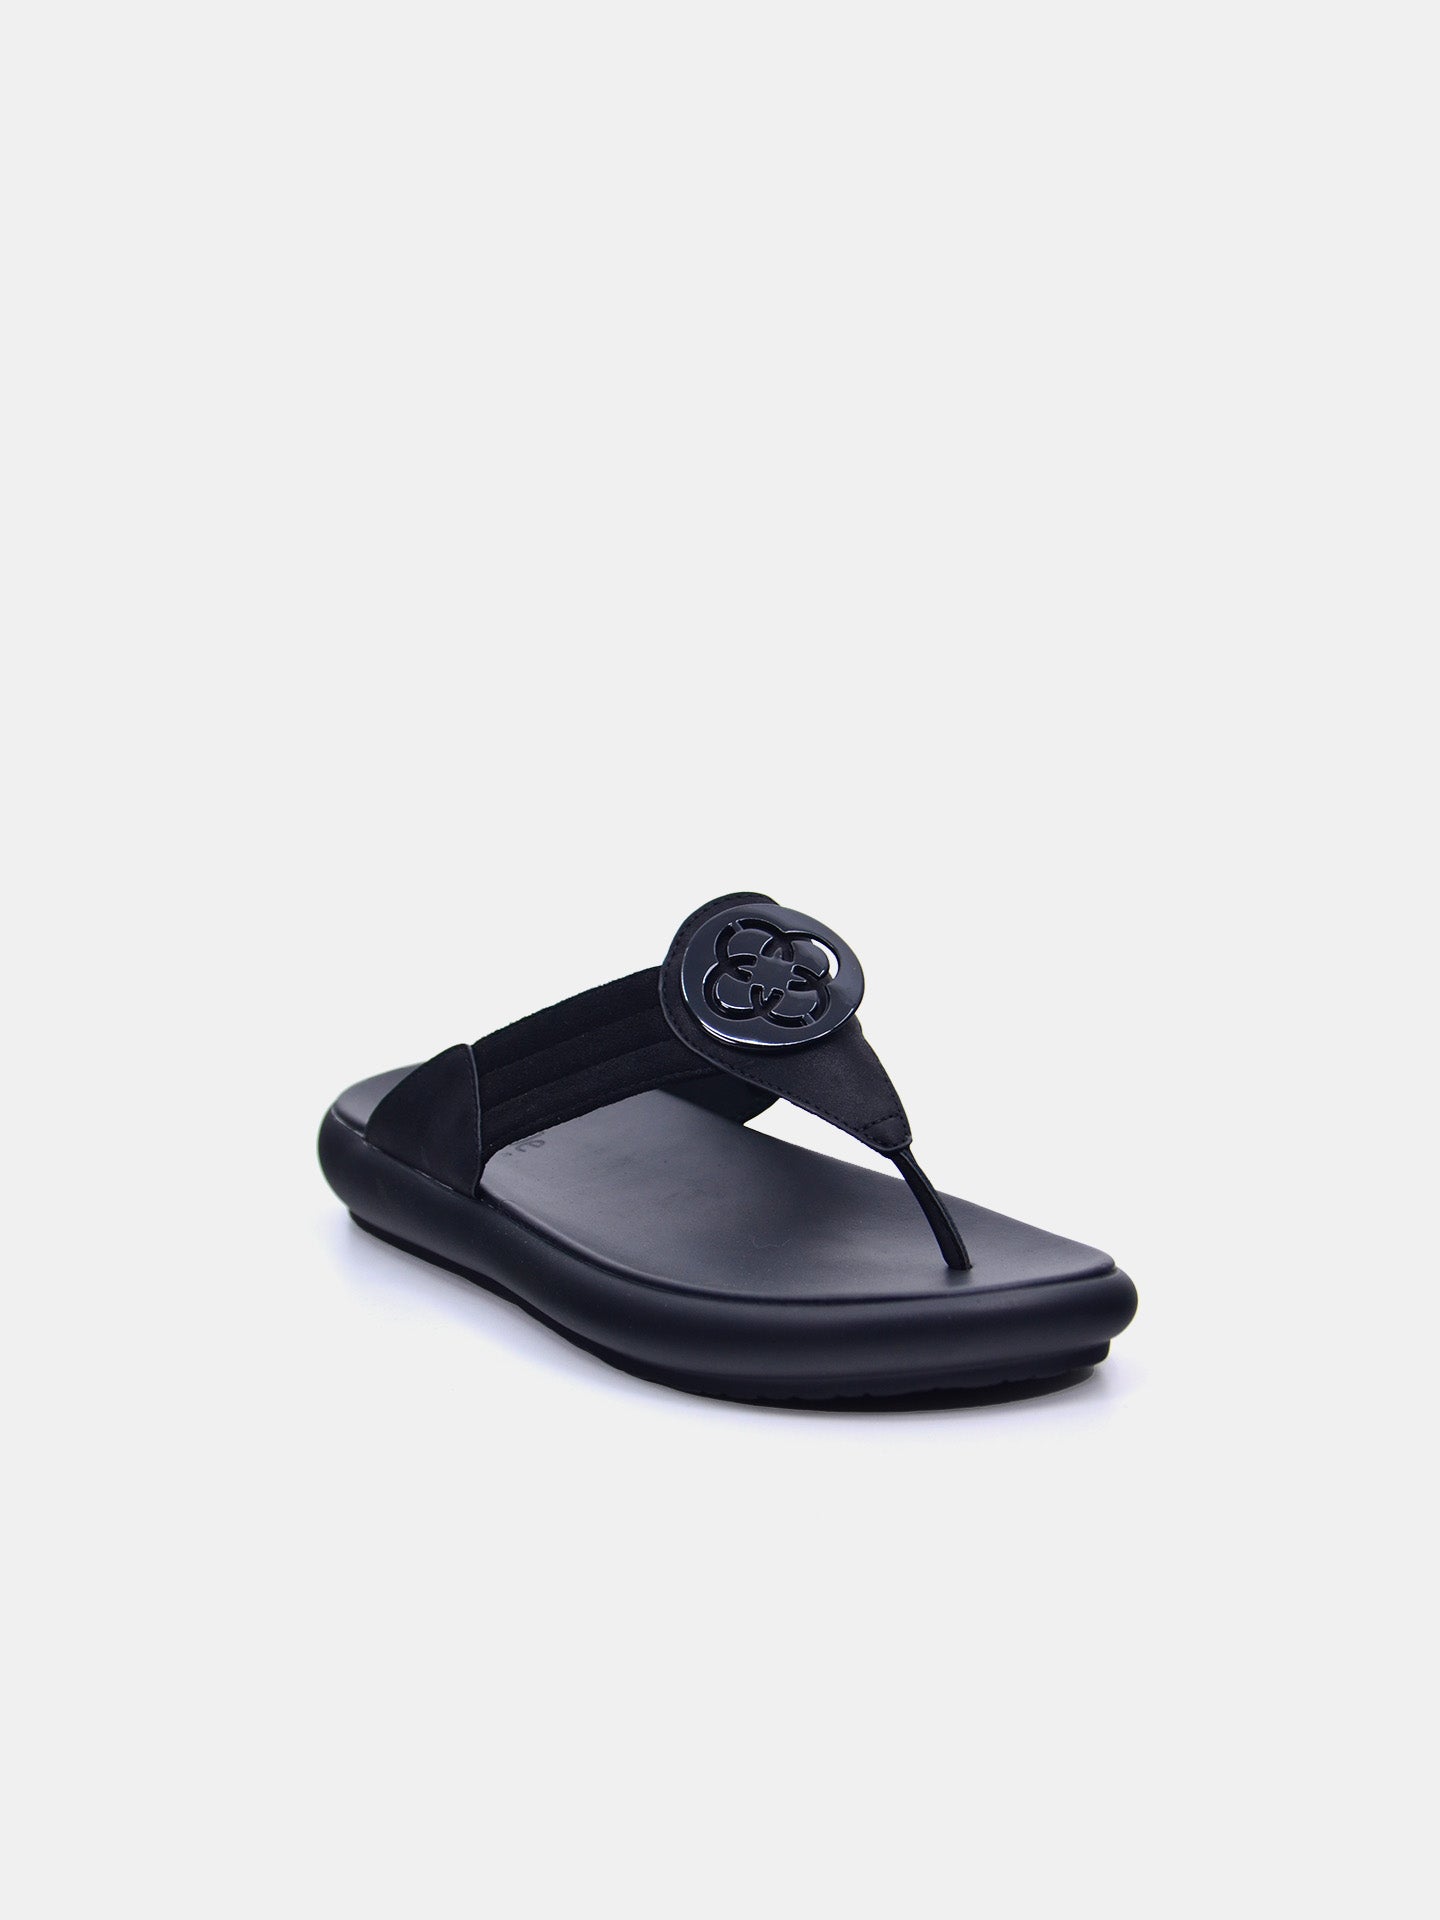 Michelle Morgan 114RC71H Women's Flat Sandals #color_Black